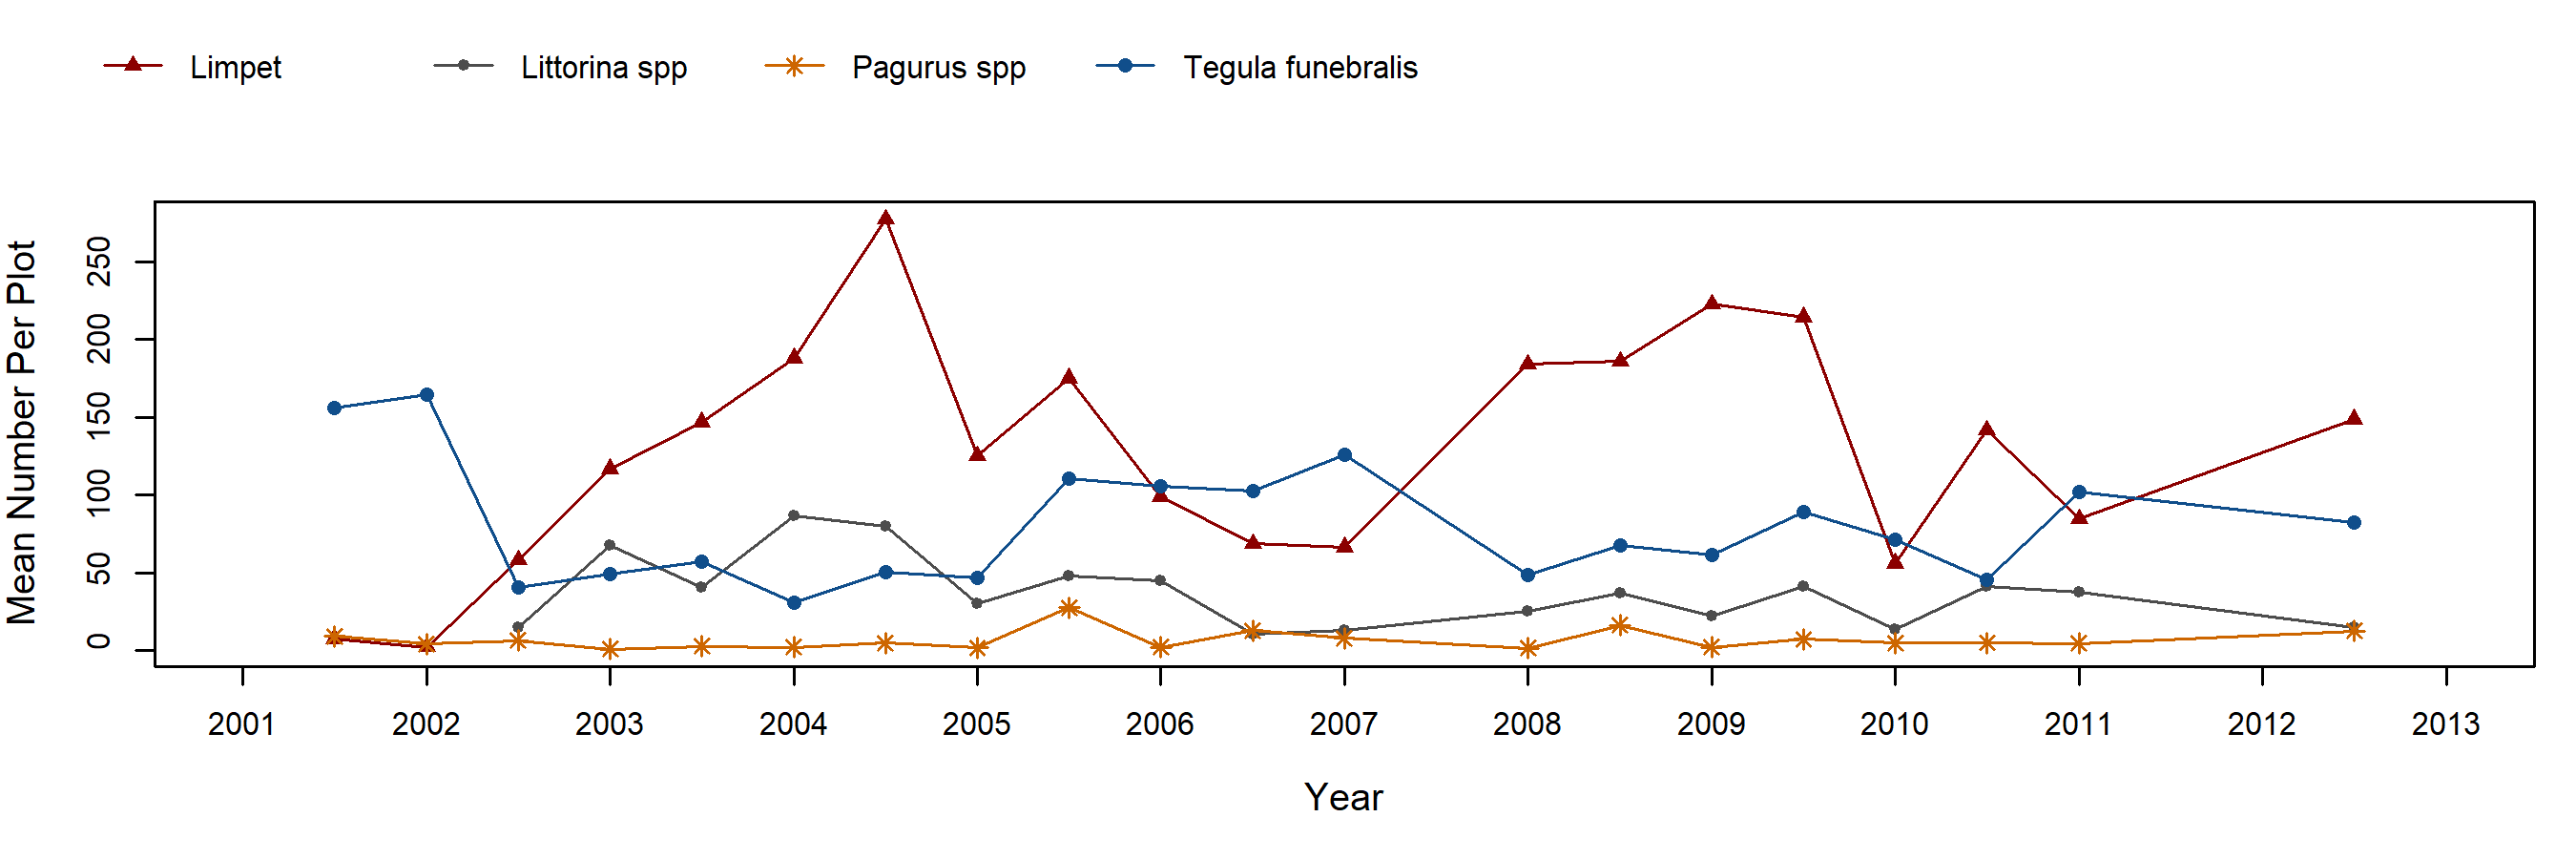 Andrew Molera Fucus trend plot